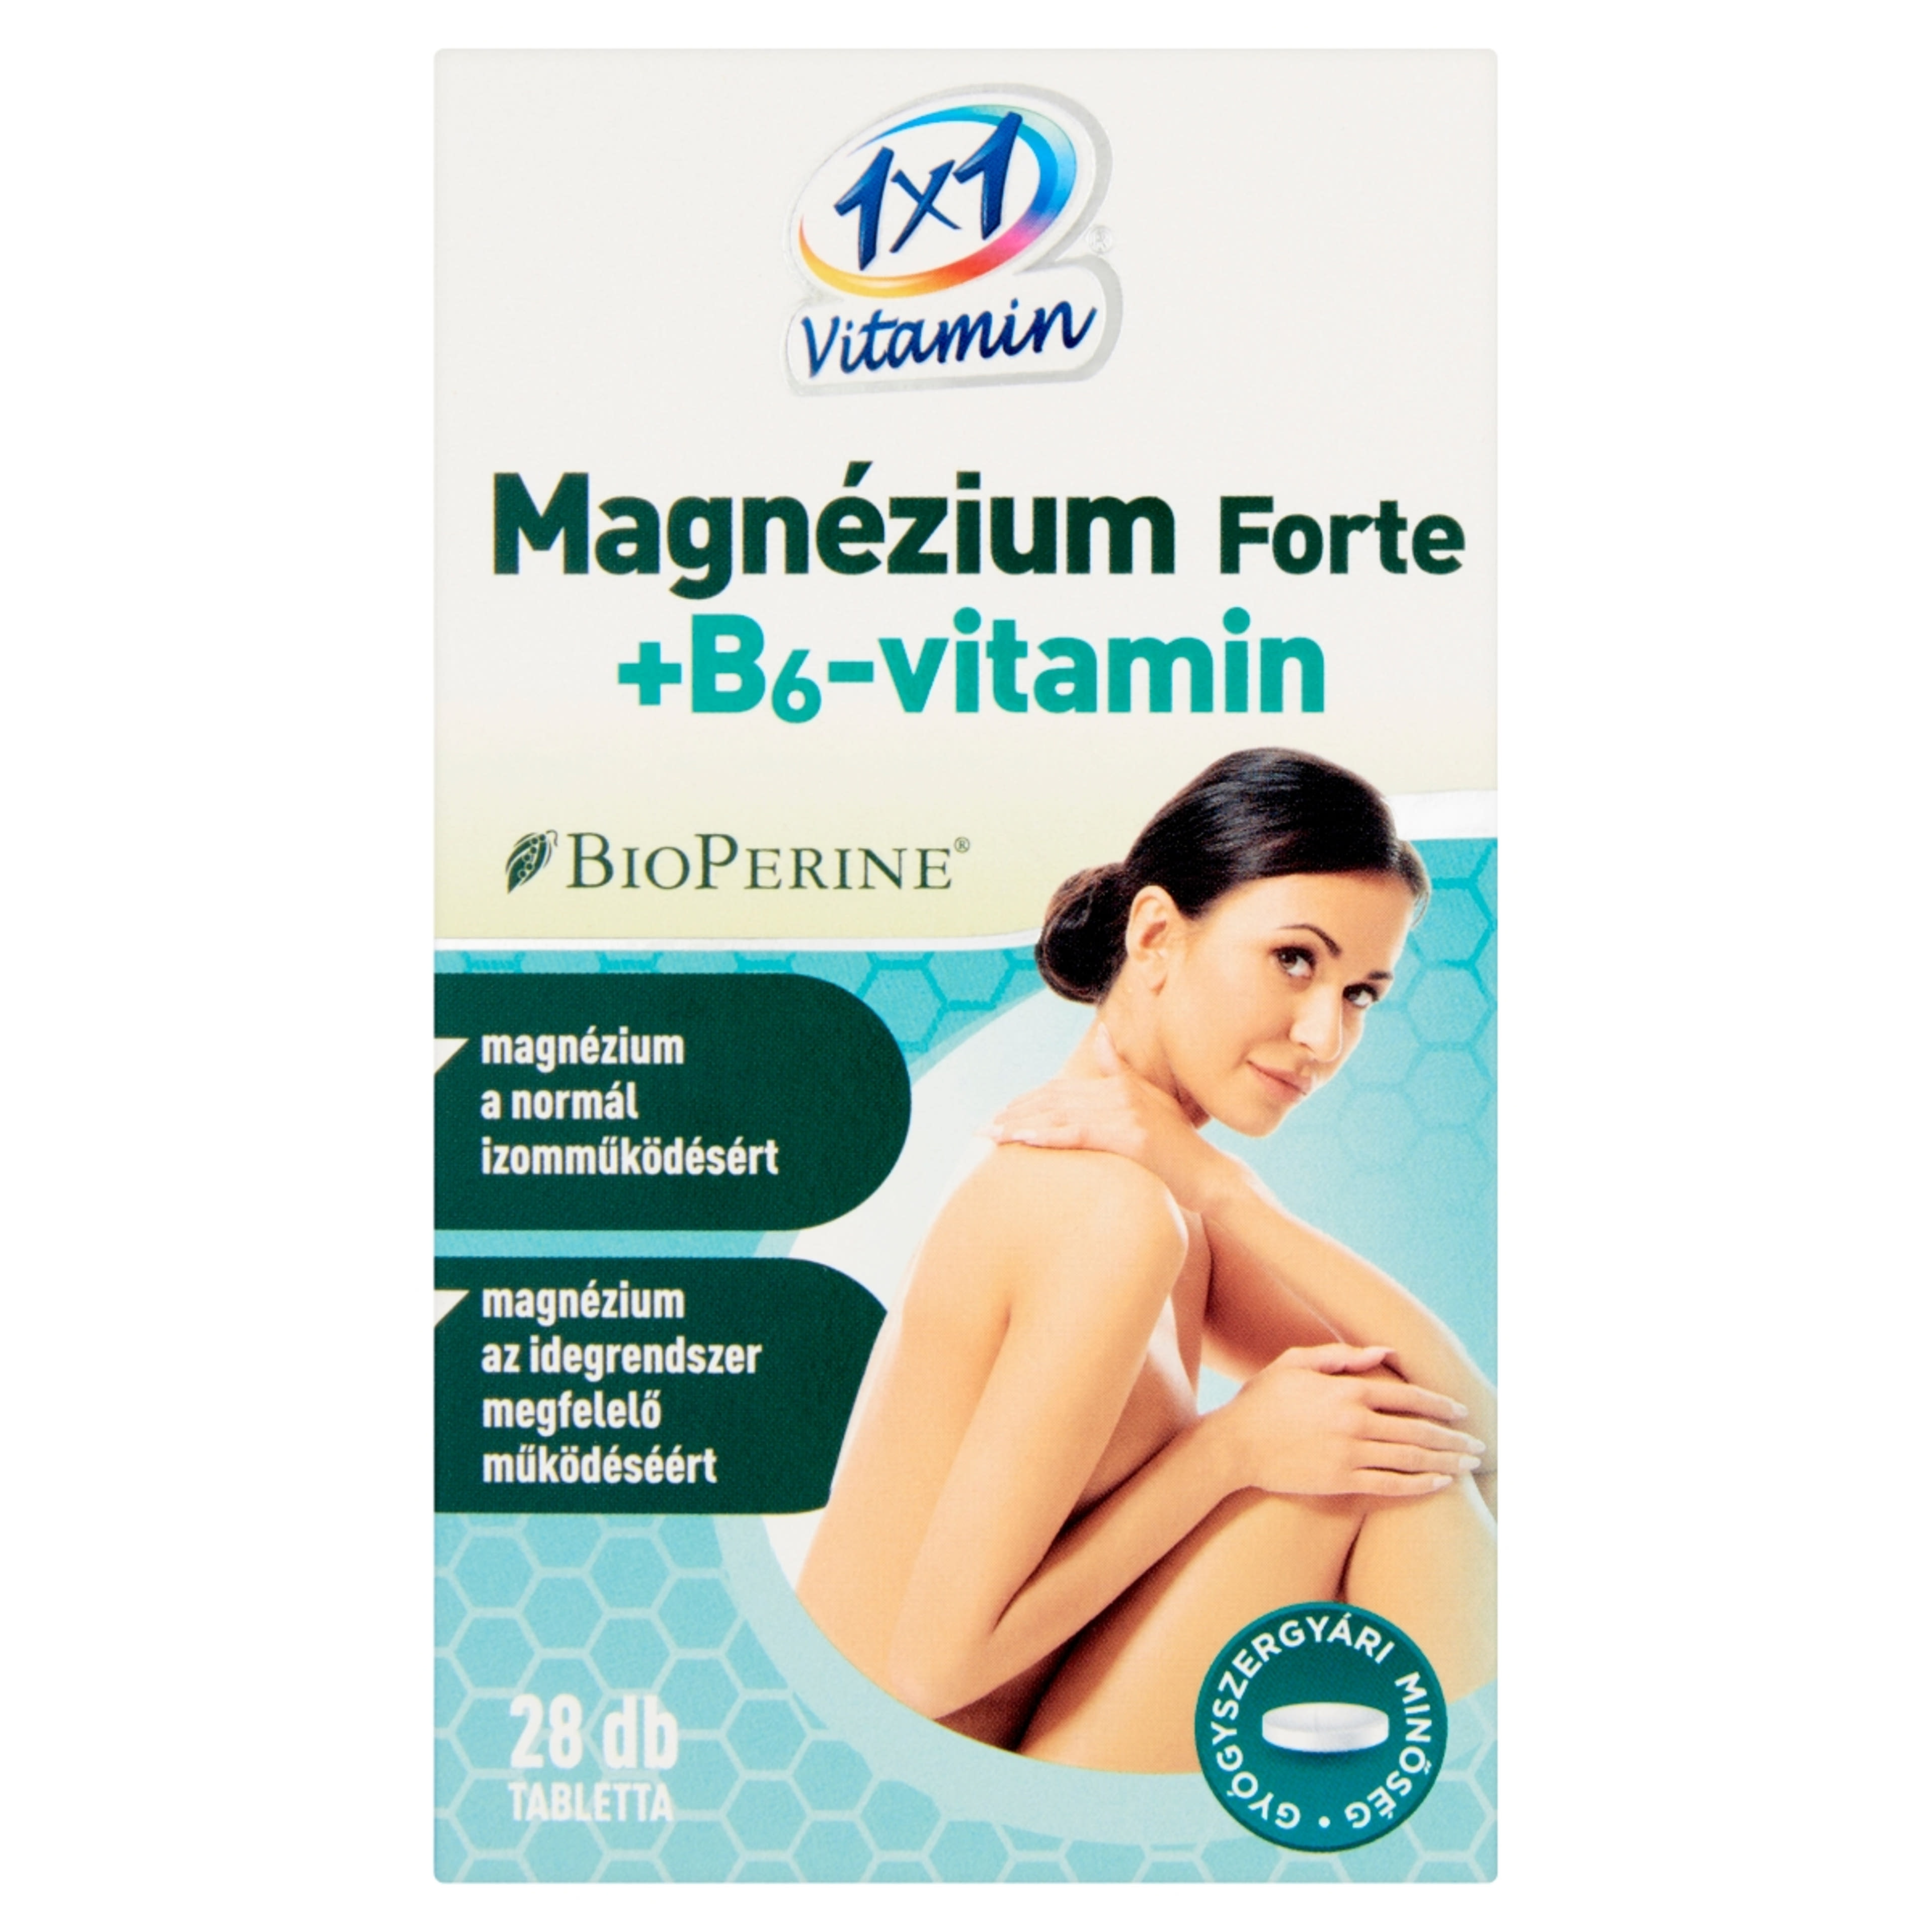 1x1 Vitamin Mg Forte+ B6 Vit Bioperin 500mg Tabletta - 28 db